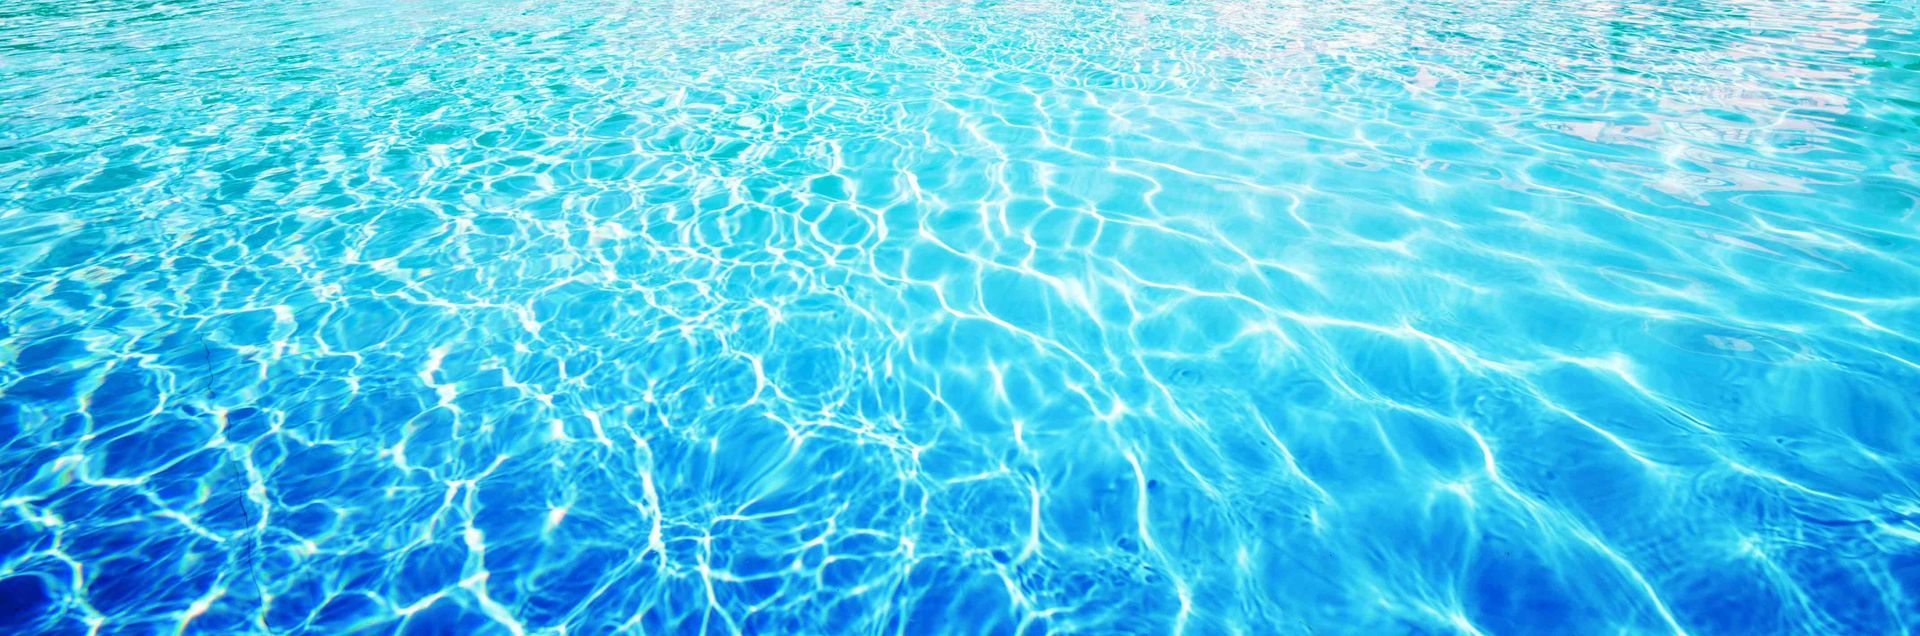 Clean pool water sparling